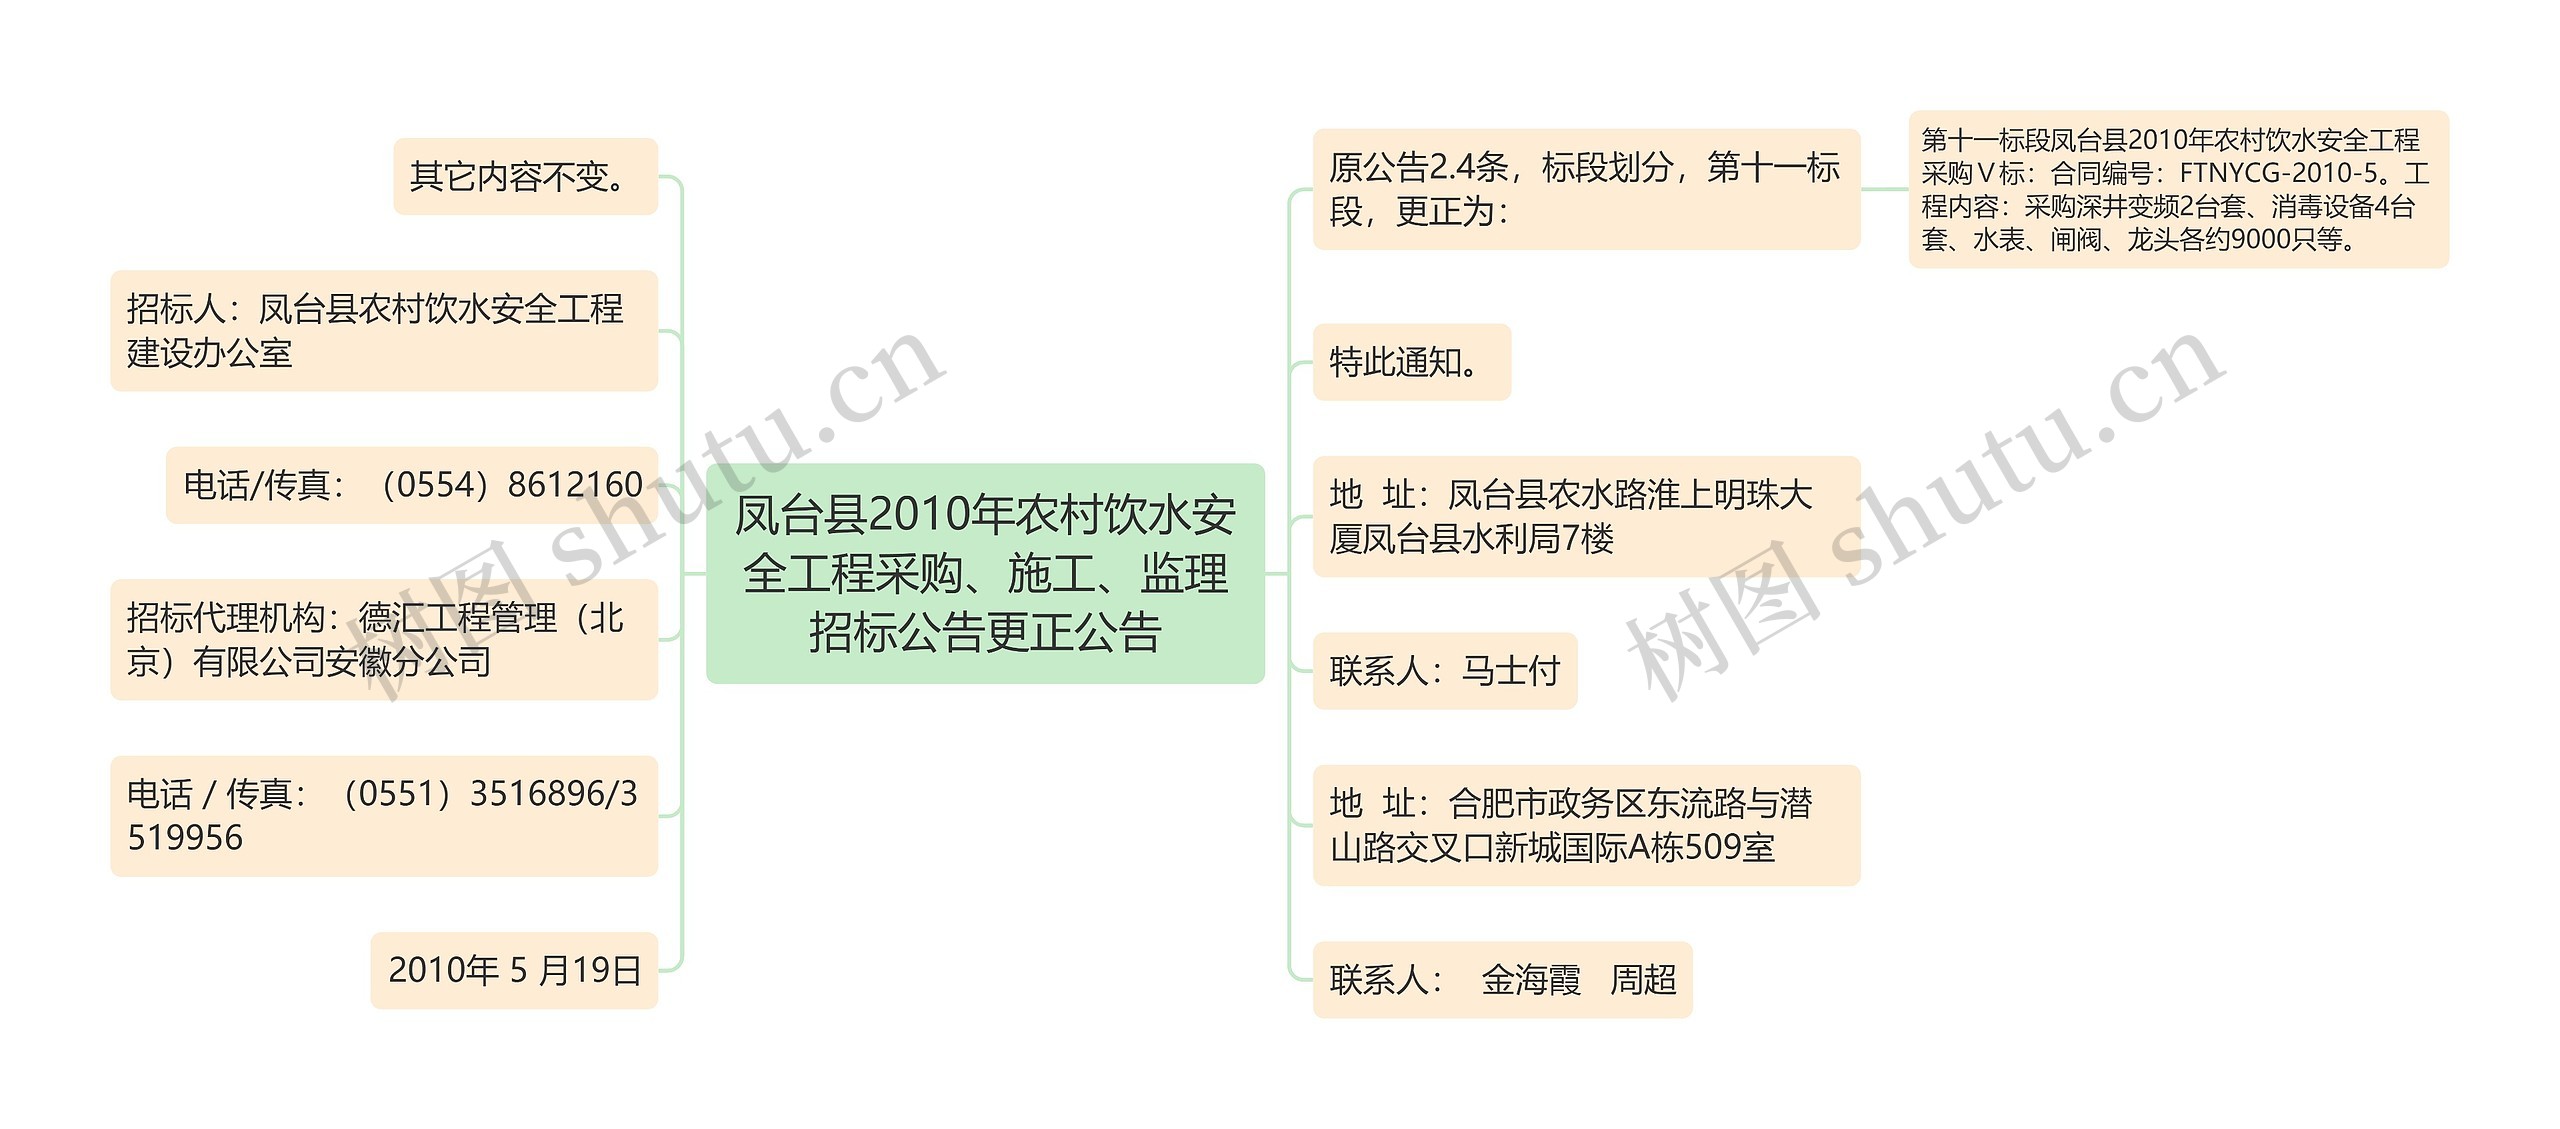 凤台县2010年农村饮水安全工程采购、施工、监理招标公告更正公告